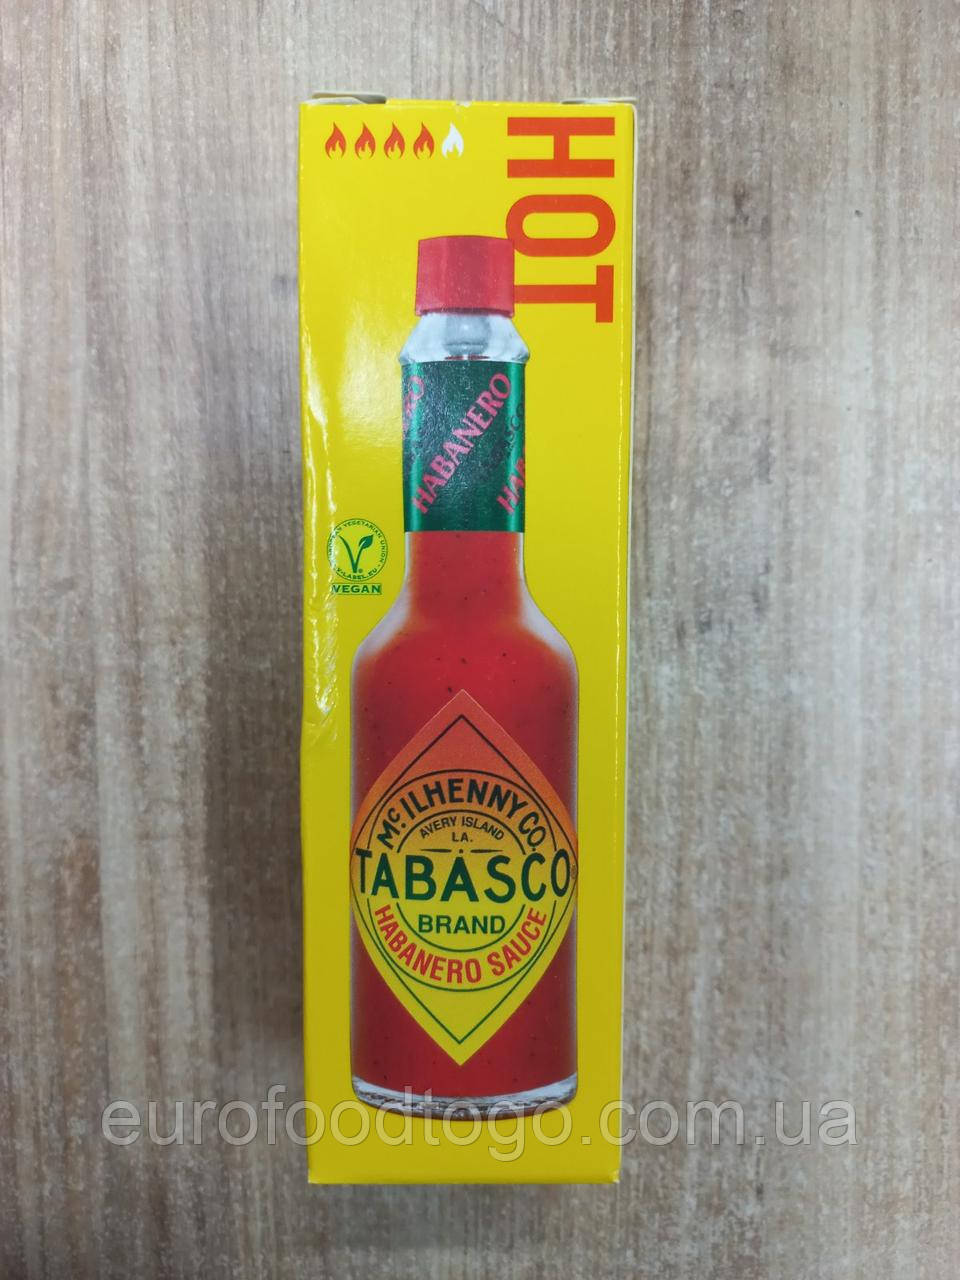 Köp Tabasco Chipotle 60ml på